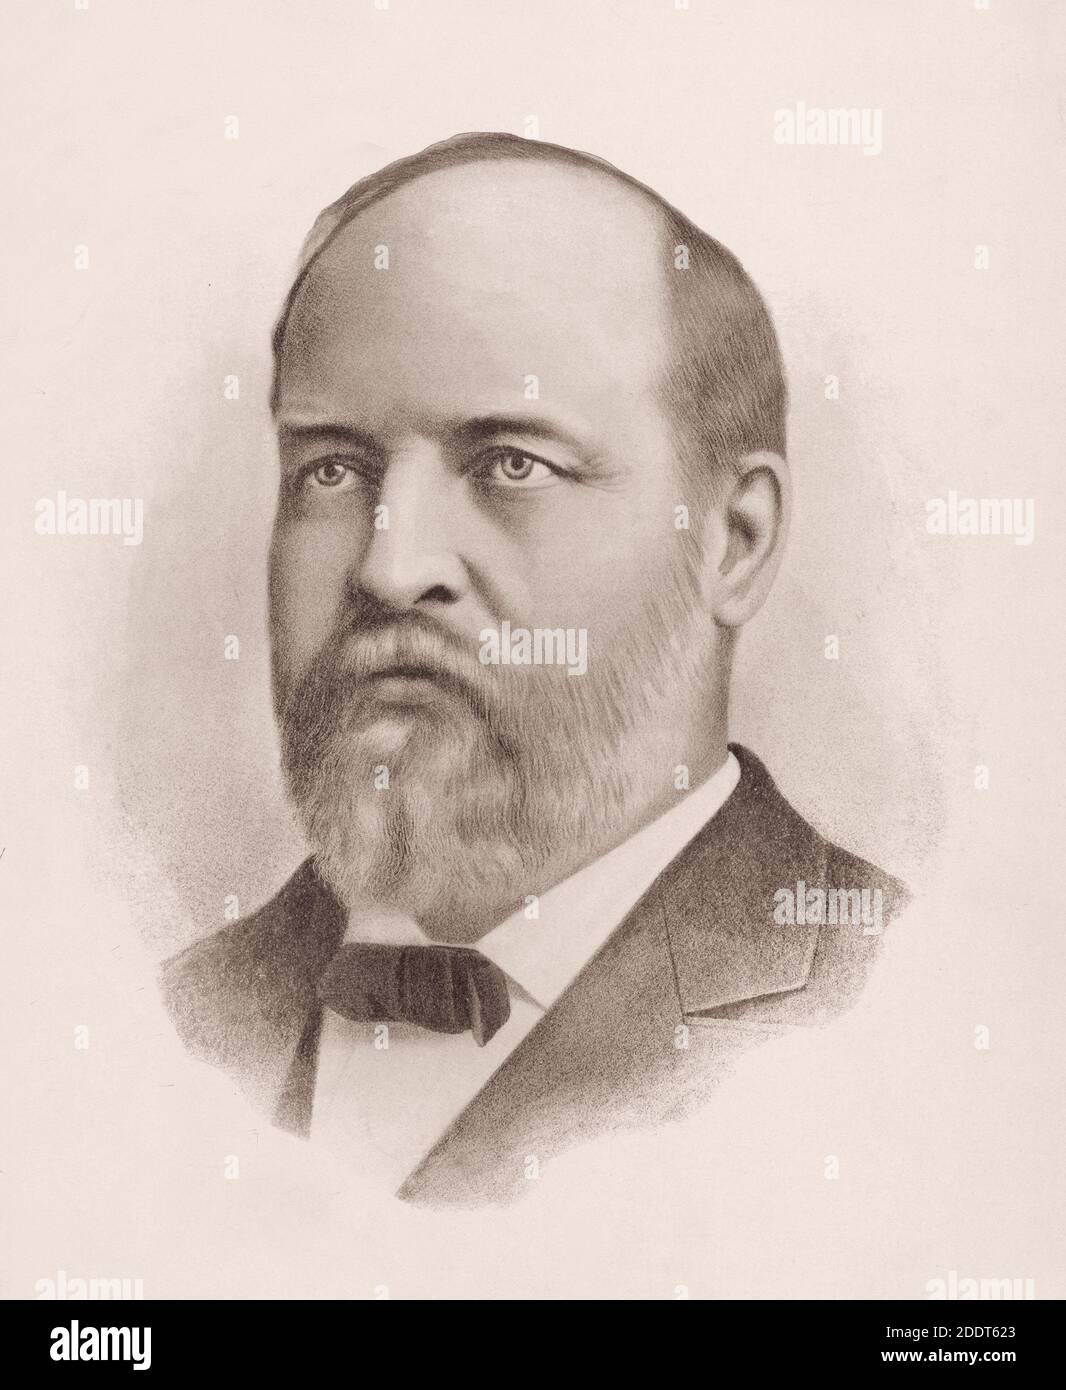 Portrait du président James A. Garfield. James Abram Garfield (1831 – 1881) était le 20e président des États-Unis, servant à partir du 4 mars 1881, u Banque D'Images